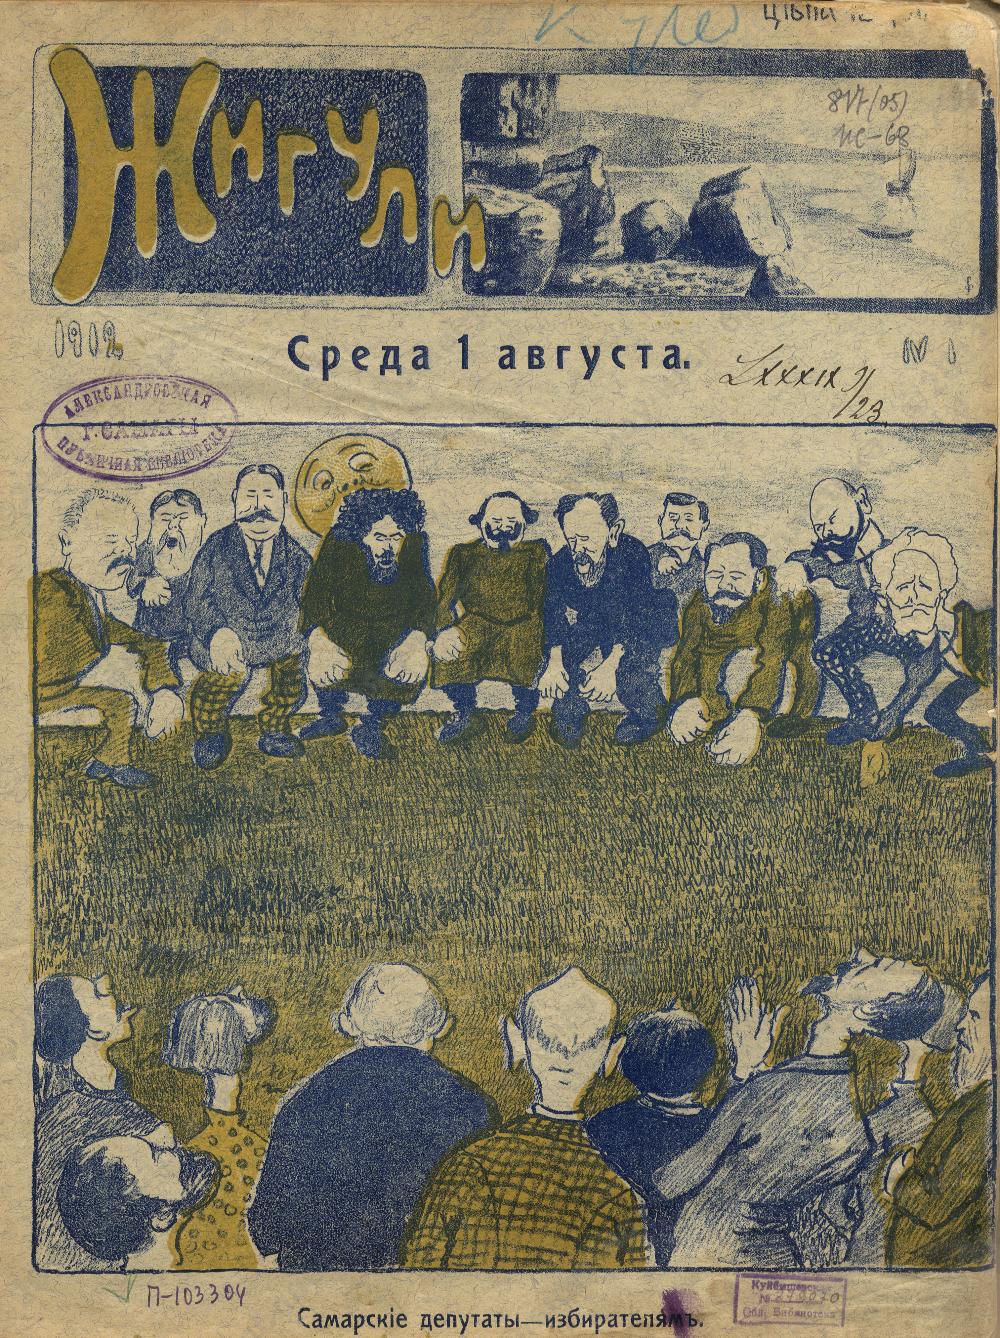 Обложка журнала "Жигули" (бывший "Самарский Горчишник")